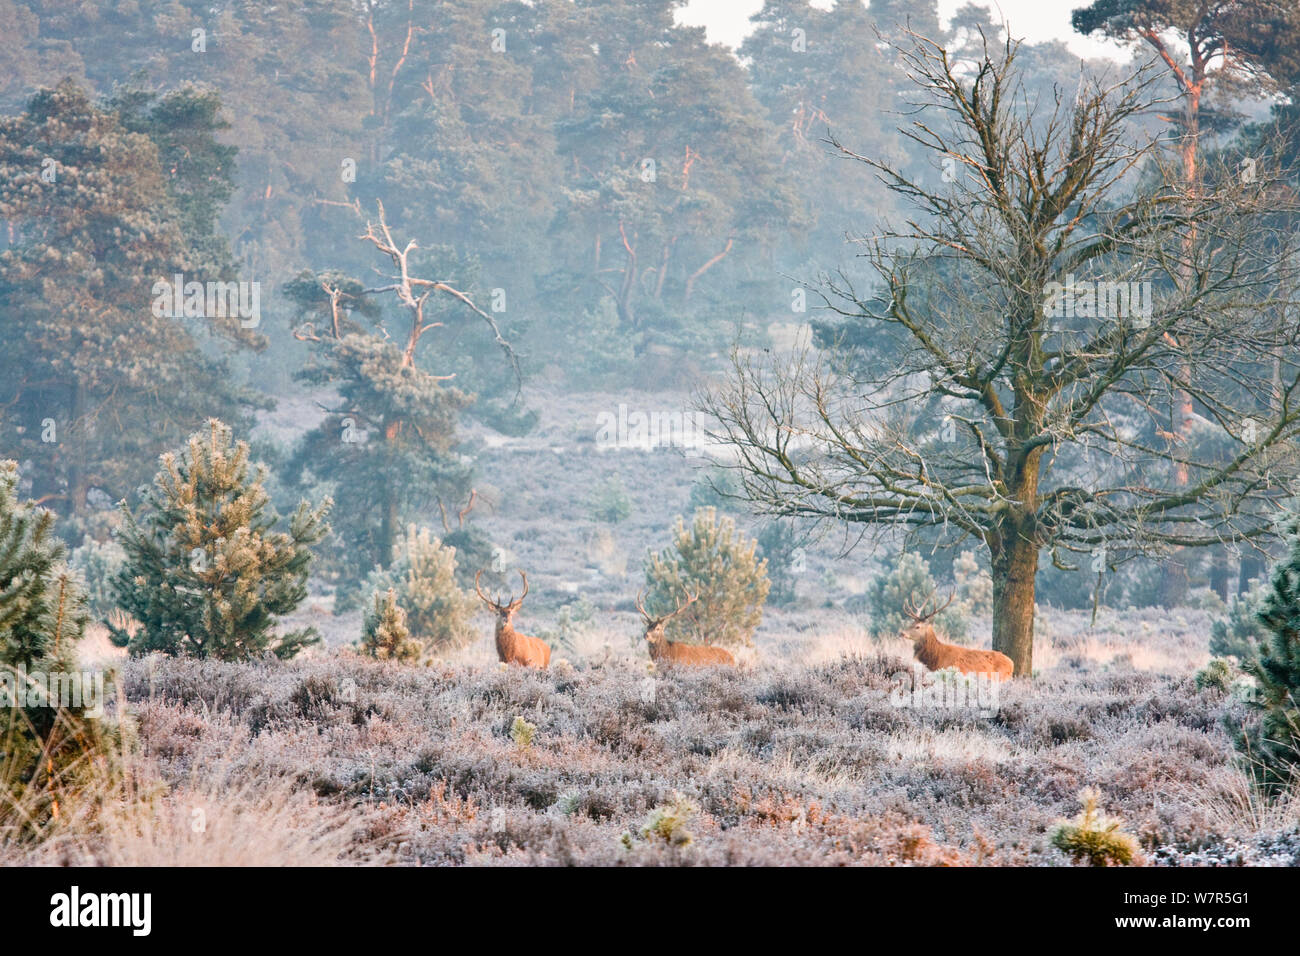 Red Deer (Cervus elaphus) im Winter Landschaft Deelerwoud finden, Veluwe, Niederlande, Dezember 2008 Stockfoto